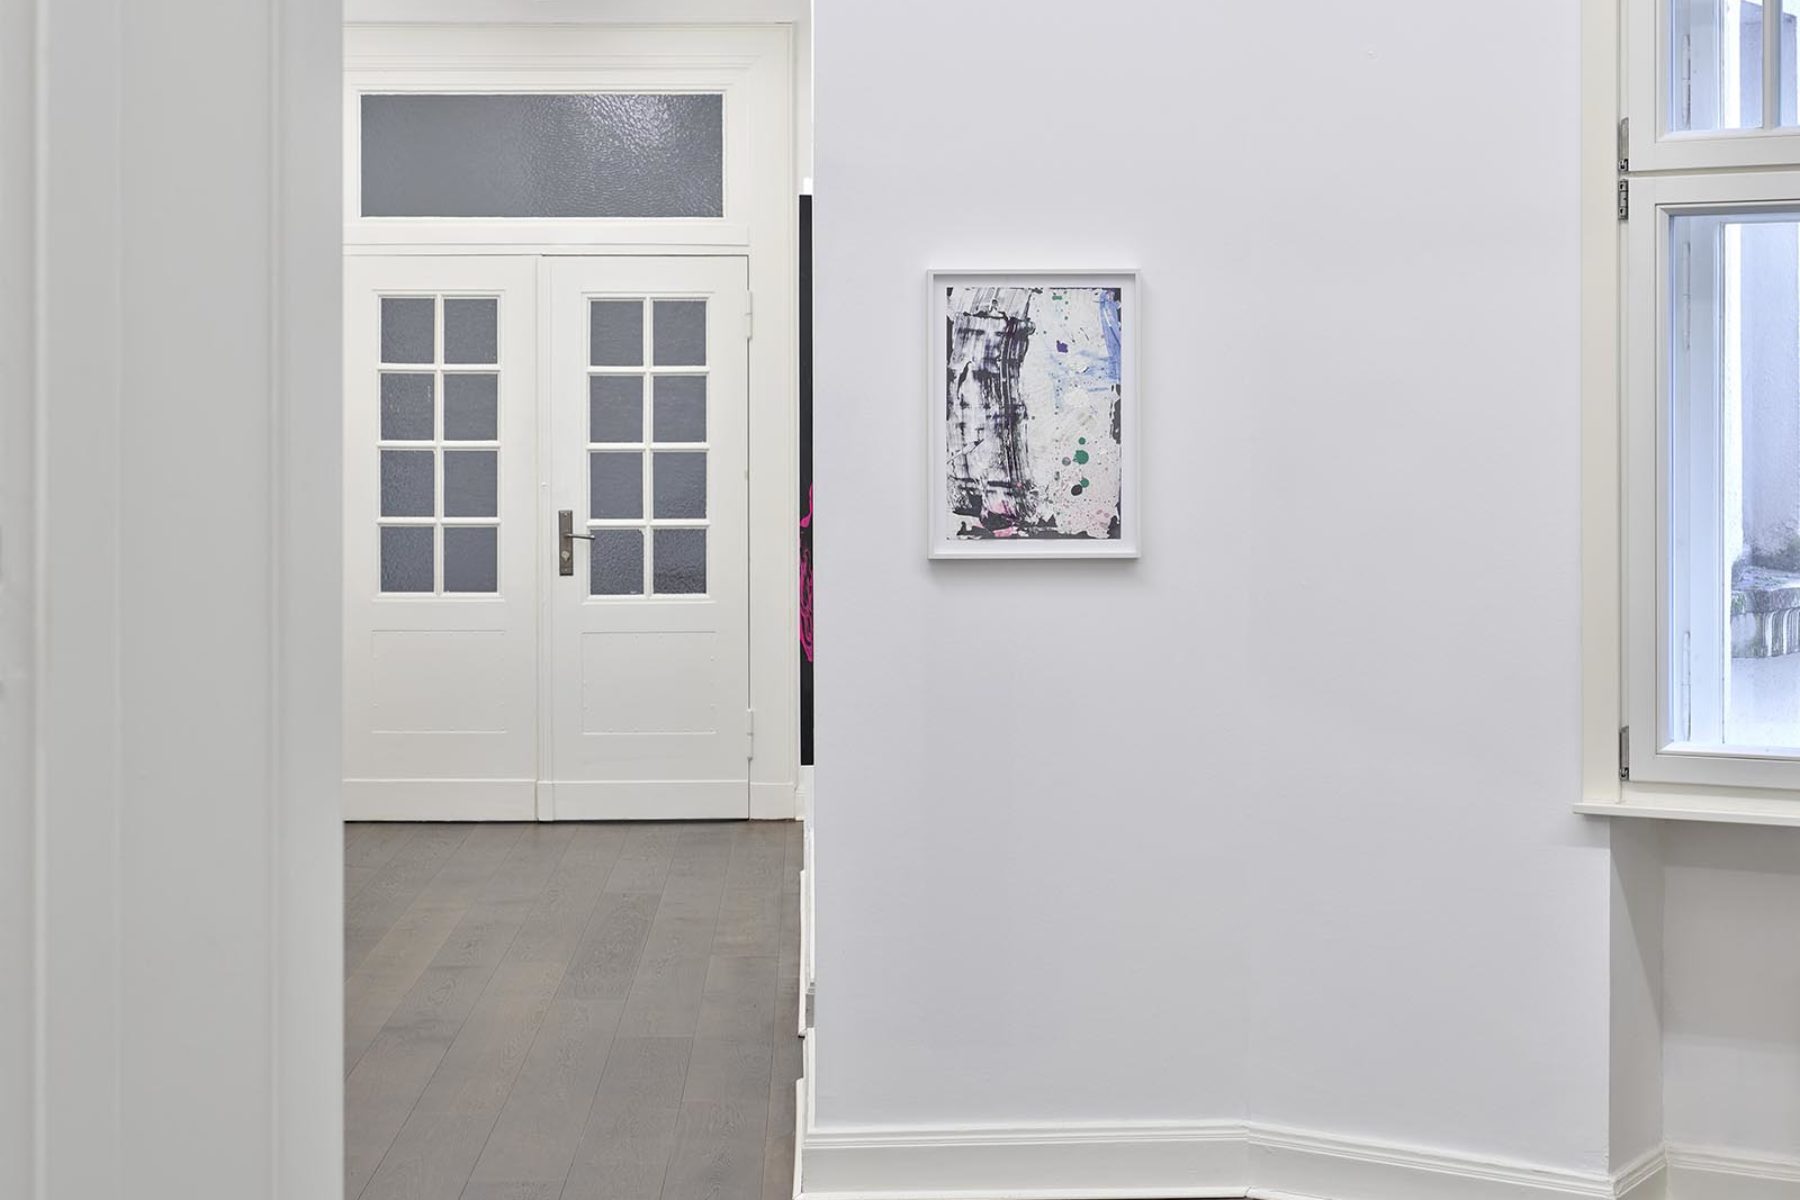 Tiziano Martini, Die Tücken der neuen Freiheit, installation view, Achenbach Hagemeier Gallery, Düsseldorf, ph. Achim Kukulies